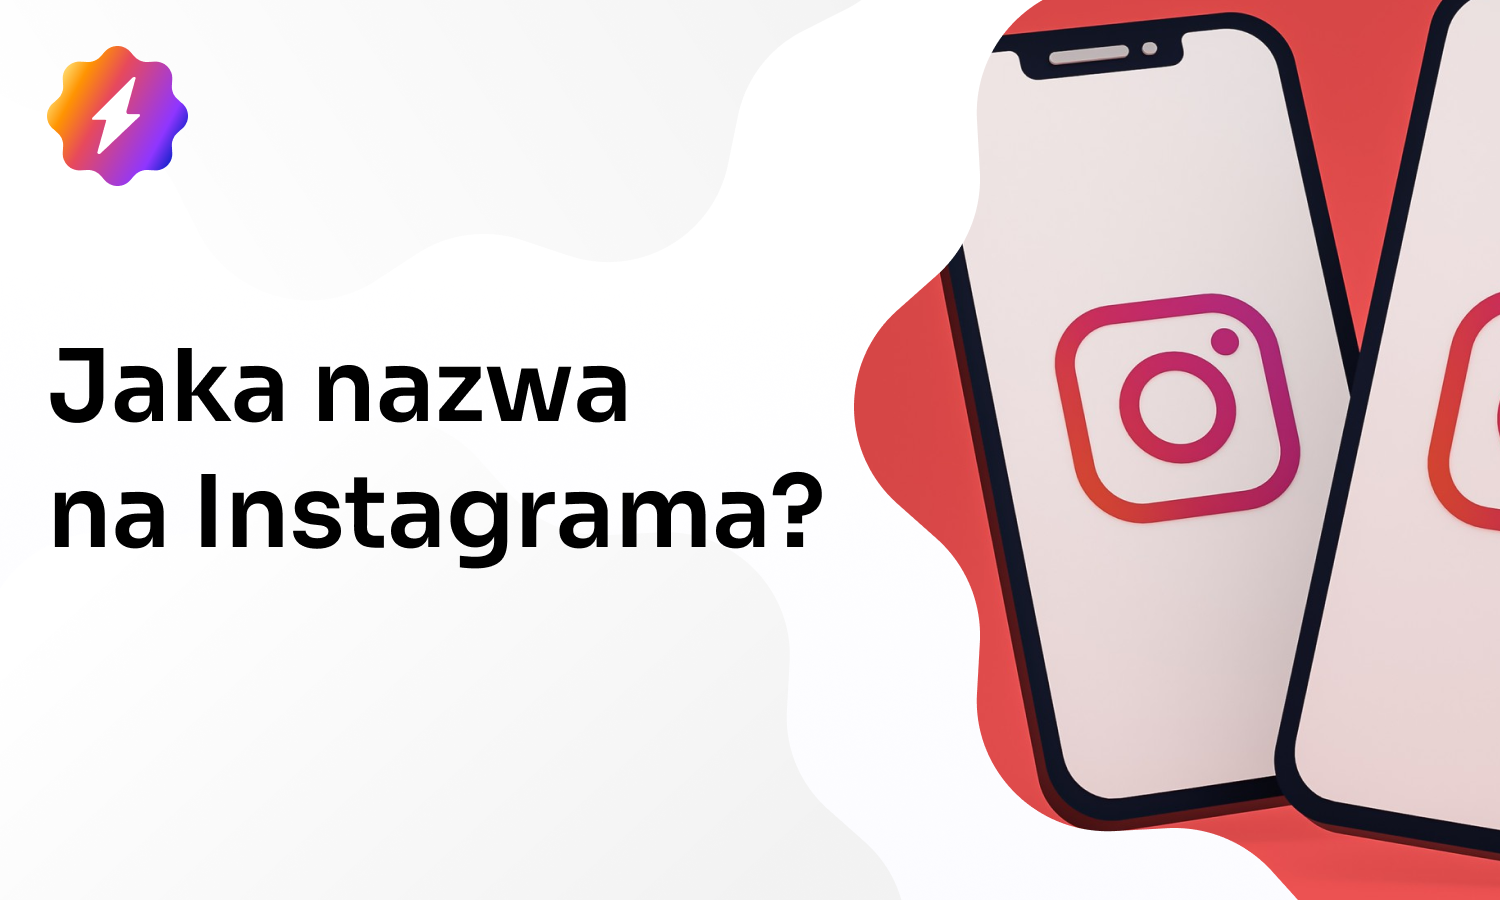 Jaka nazwa na Instagrama? Pomysłowa i kreatywna!